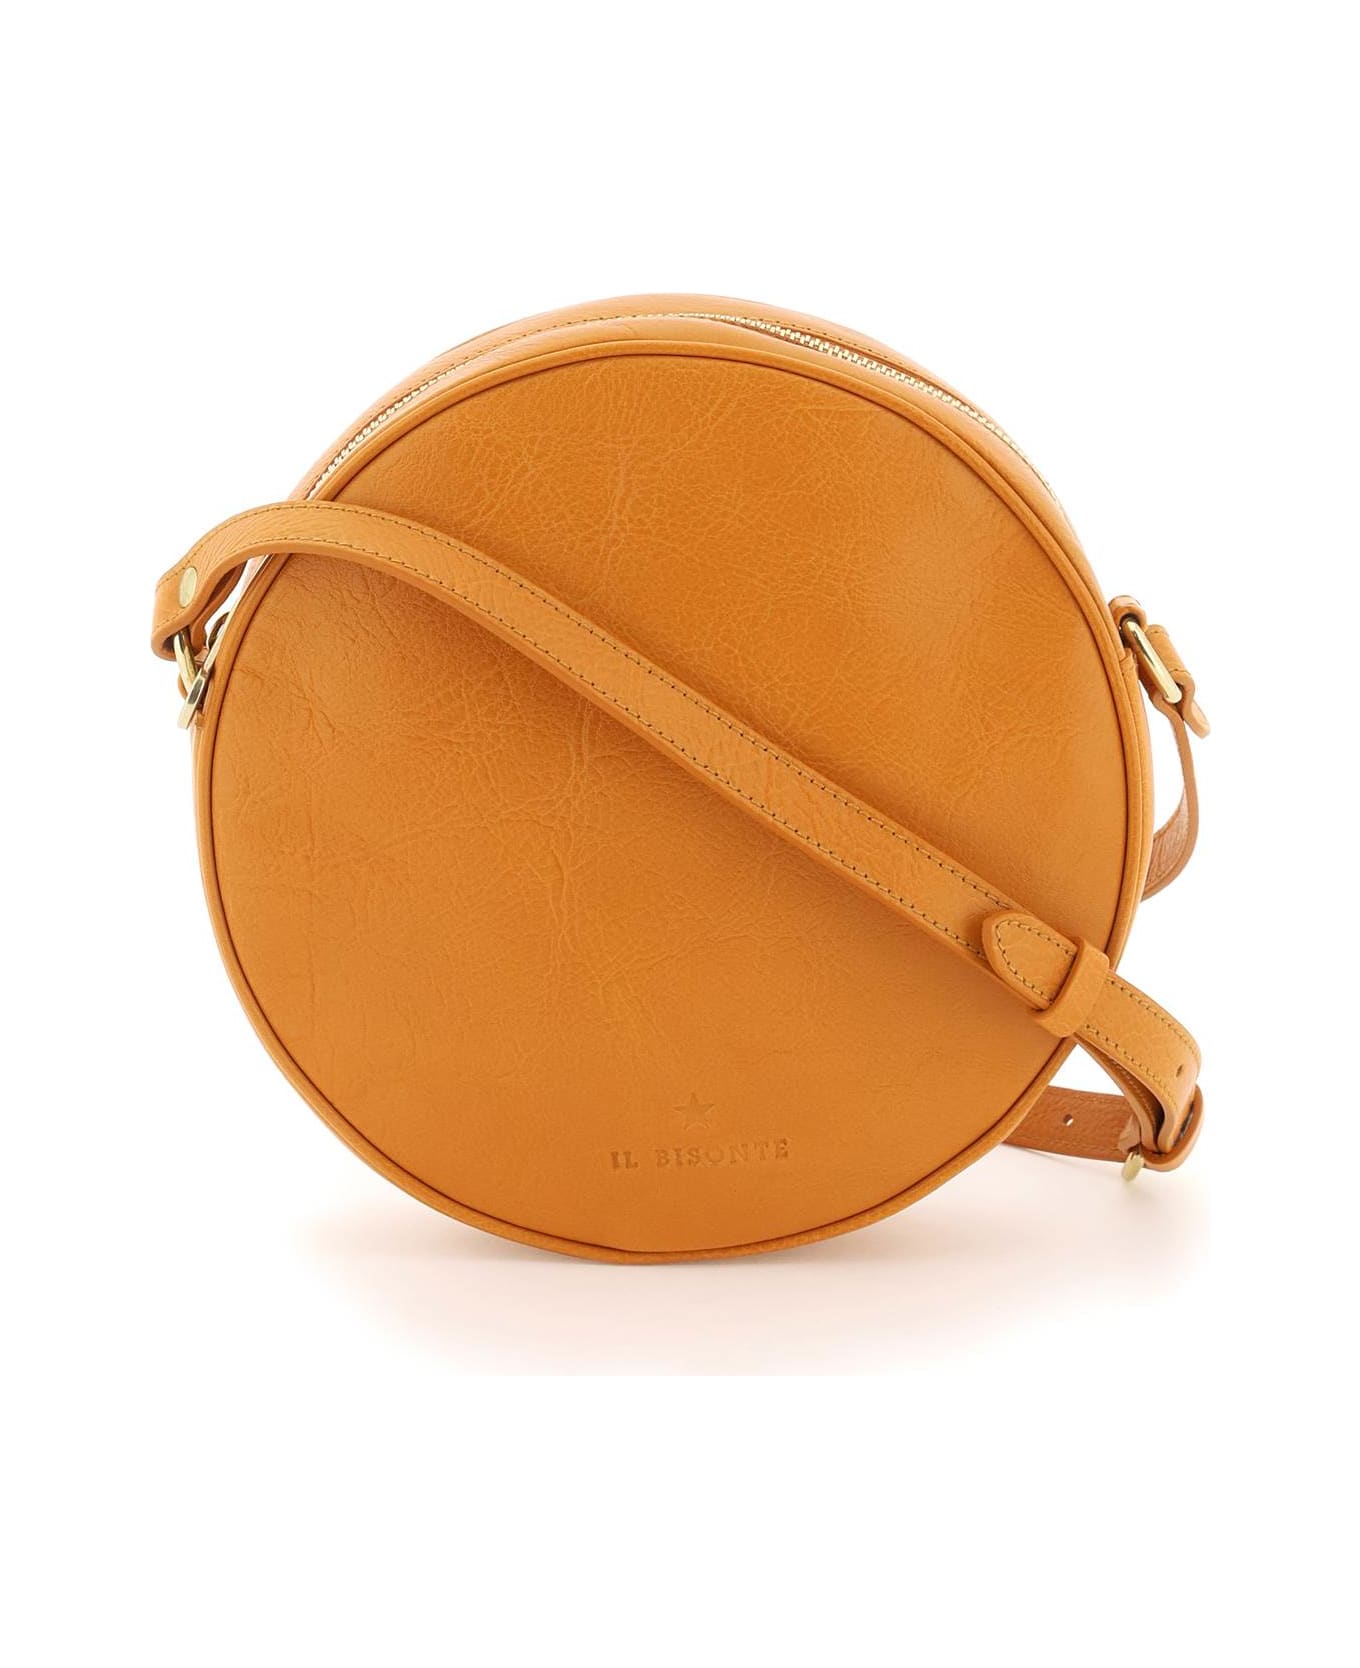 Il Bisonte Volonata Leather Crossbody Bag - MIELE (Orange)